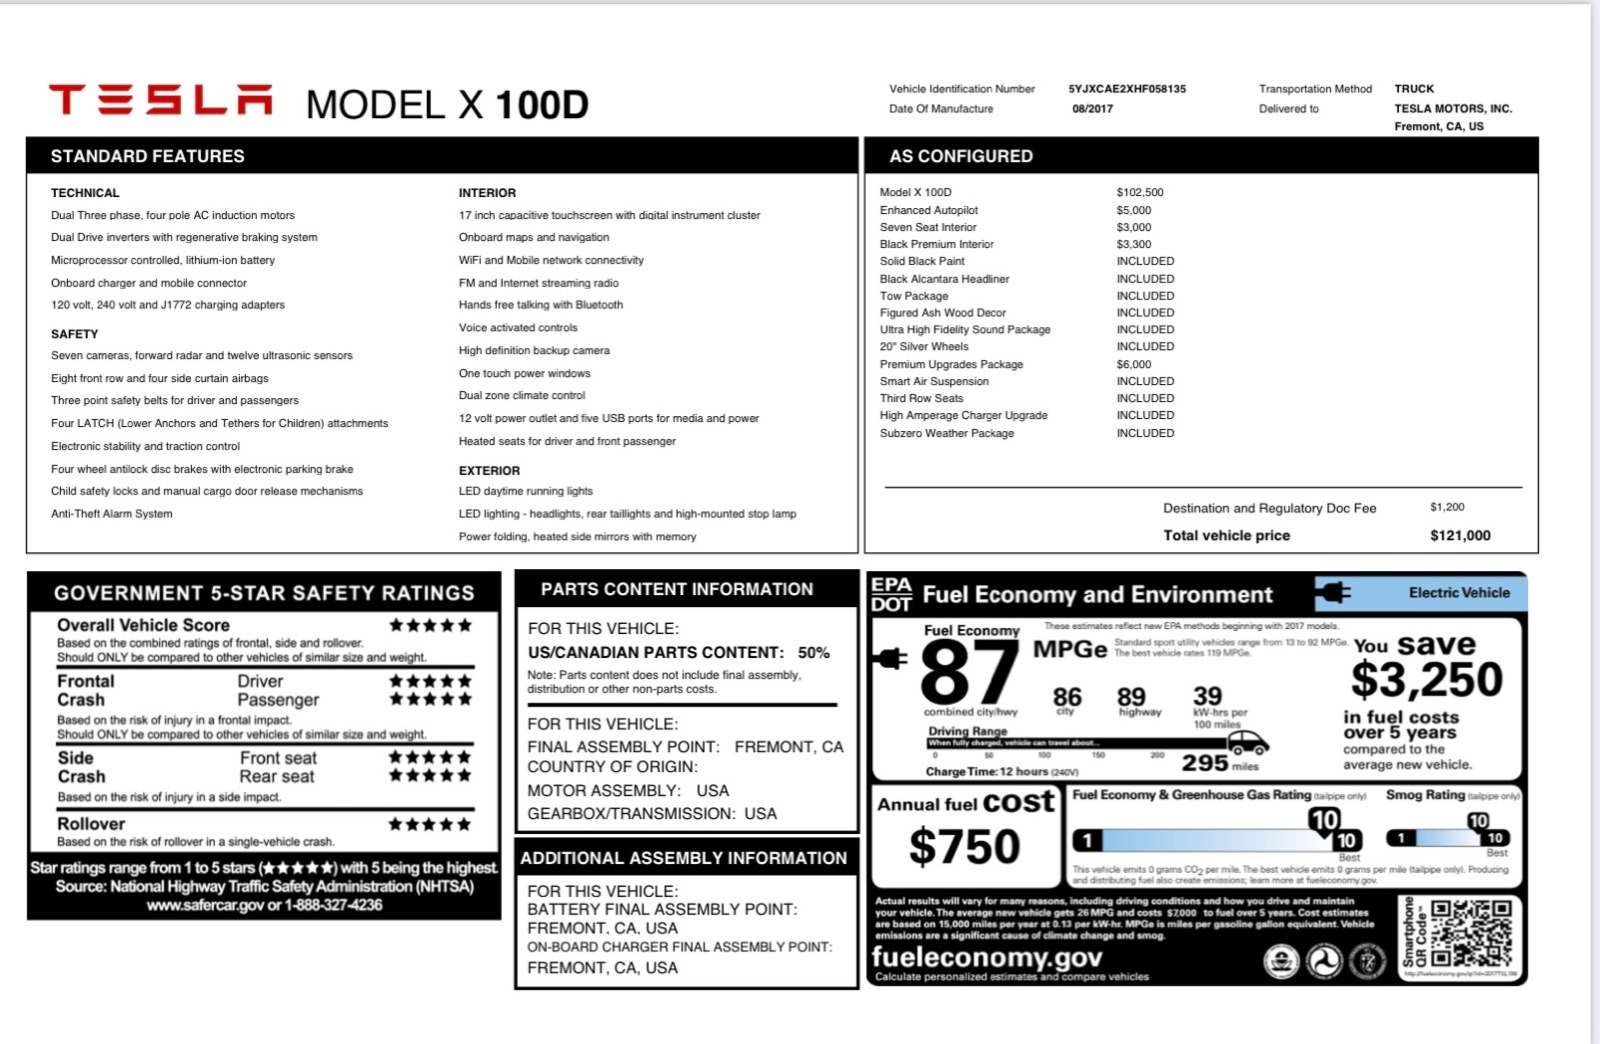 2017 Model X 100D full